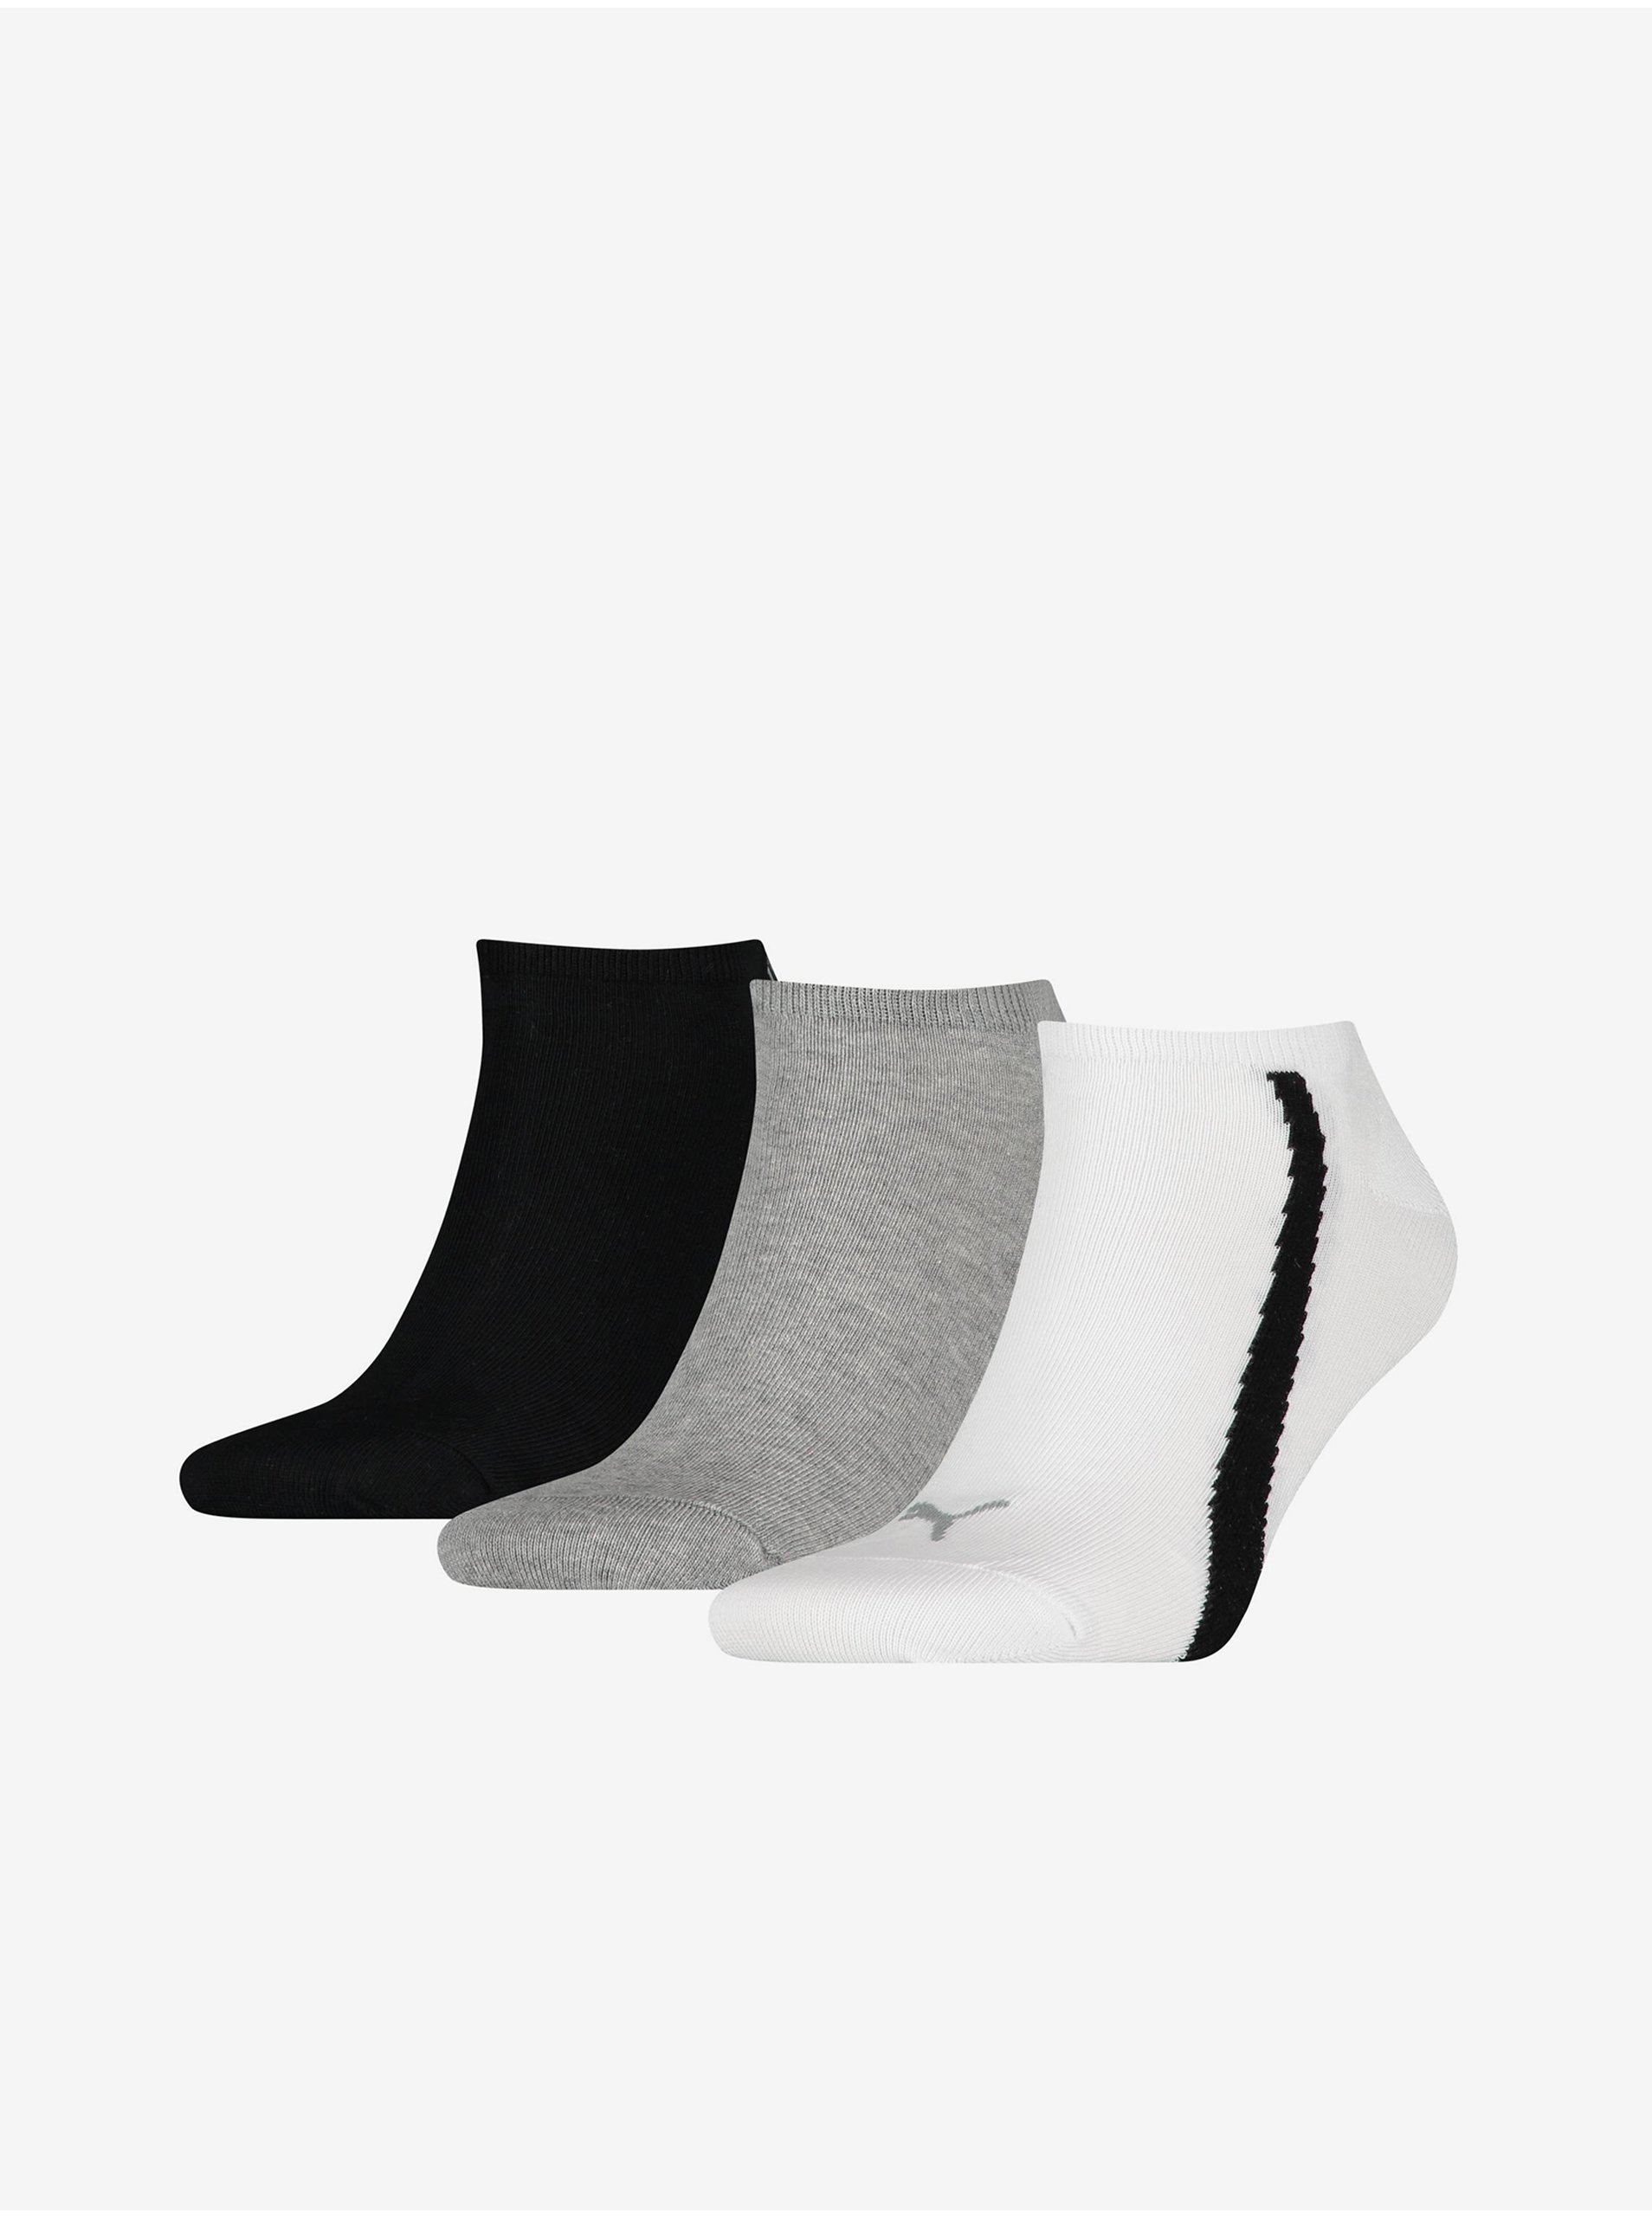 Lacno Súprava troch párov ponožiek v čiernej, bielej a svetlo šedej farbe Puma Lifestyle